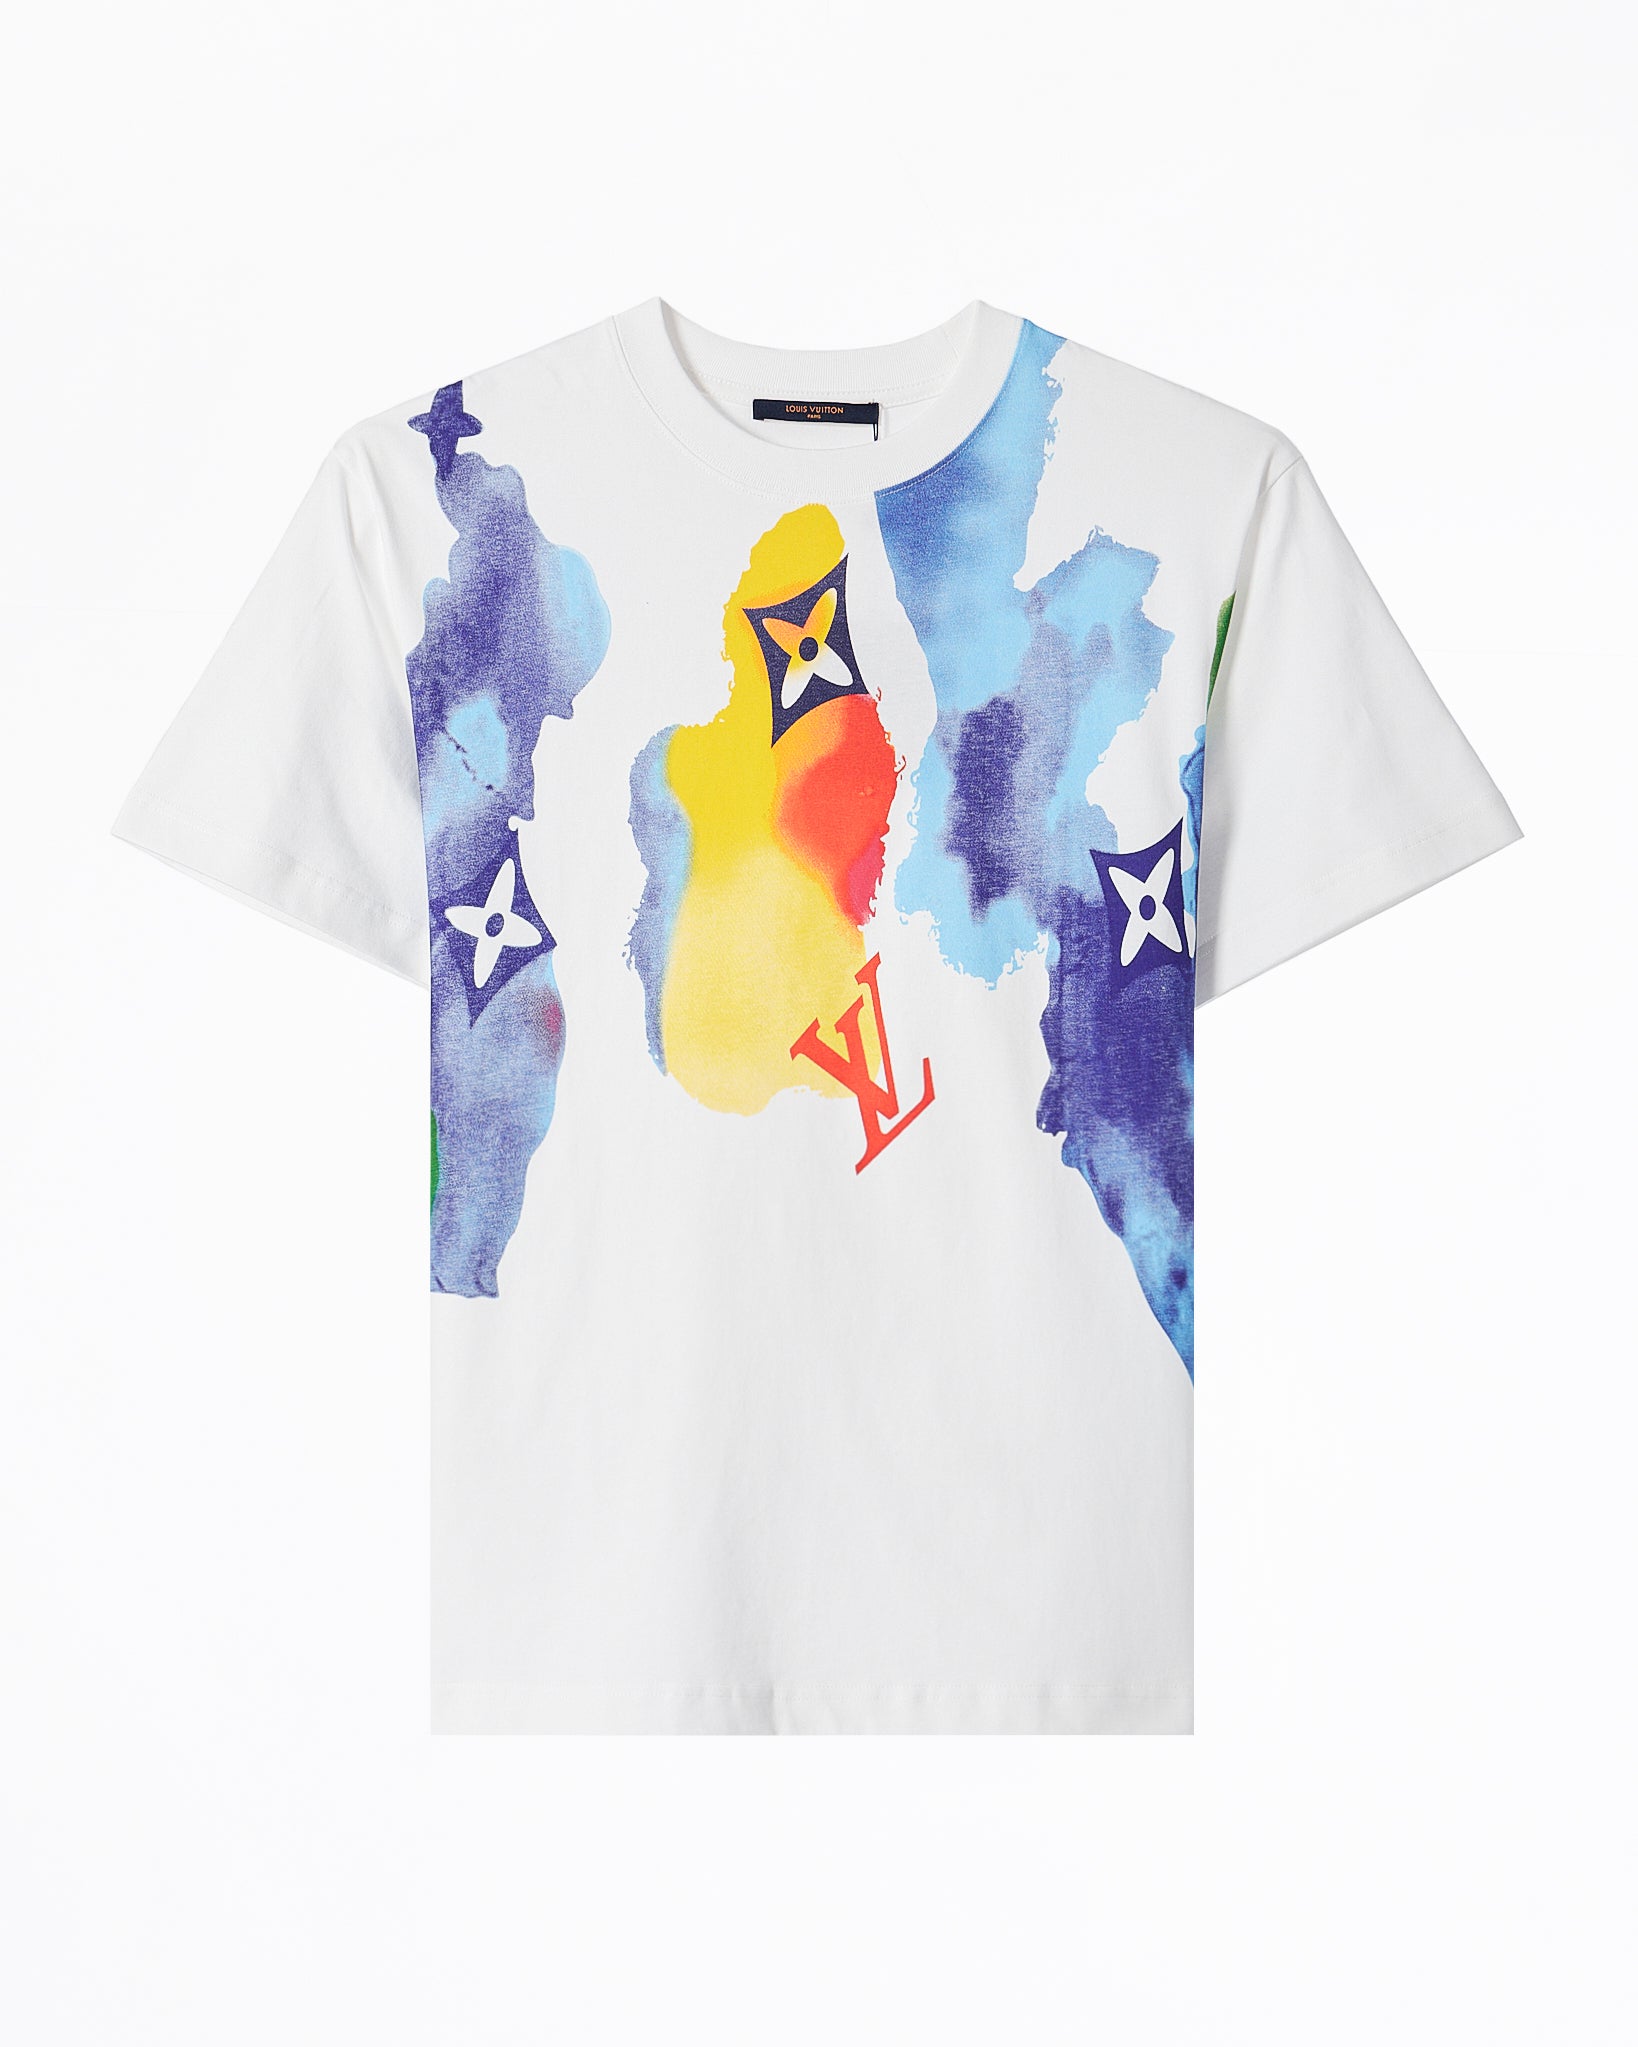 SOLD* Louis Vuitton Monogram Watercolor T-Shirt